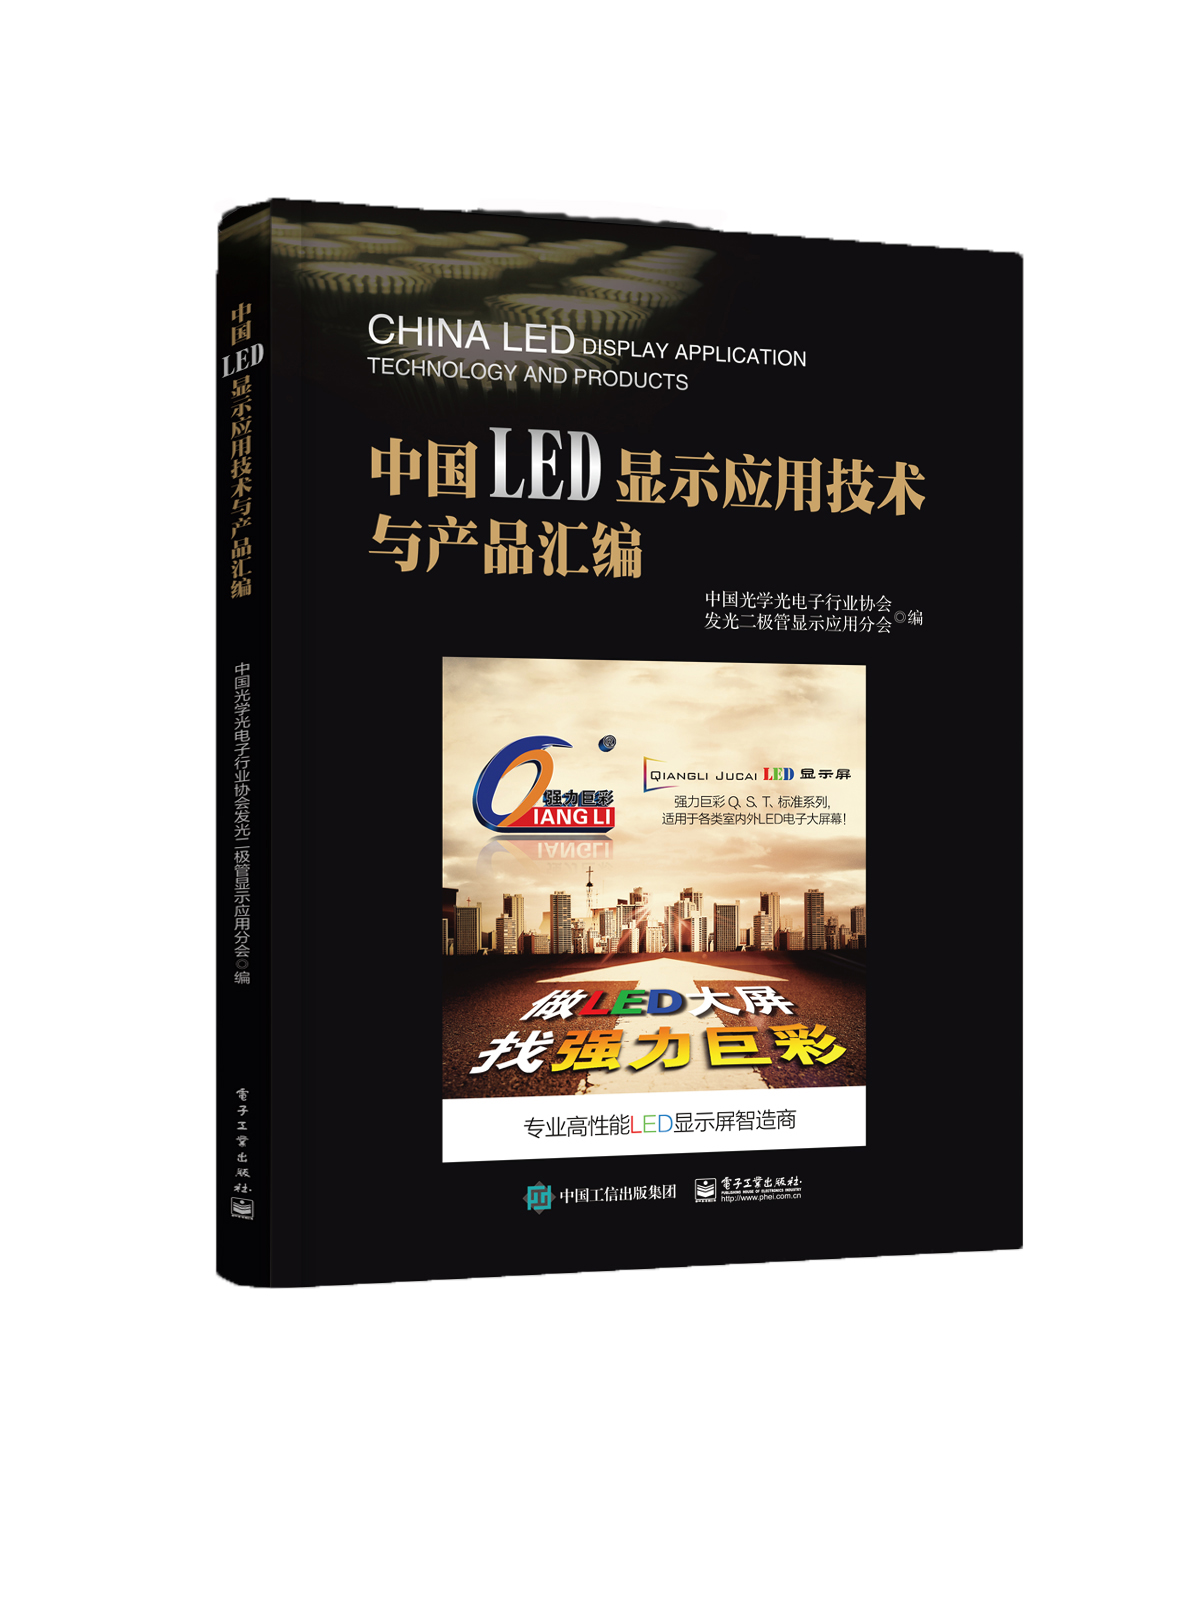 中国LED显示应用技术与产品汇编9787121310546 mobi格式下载